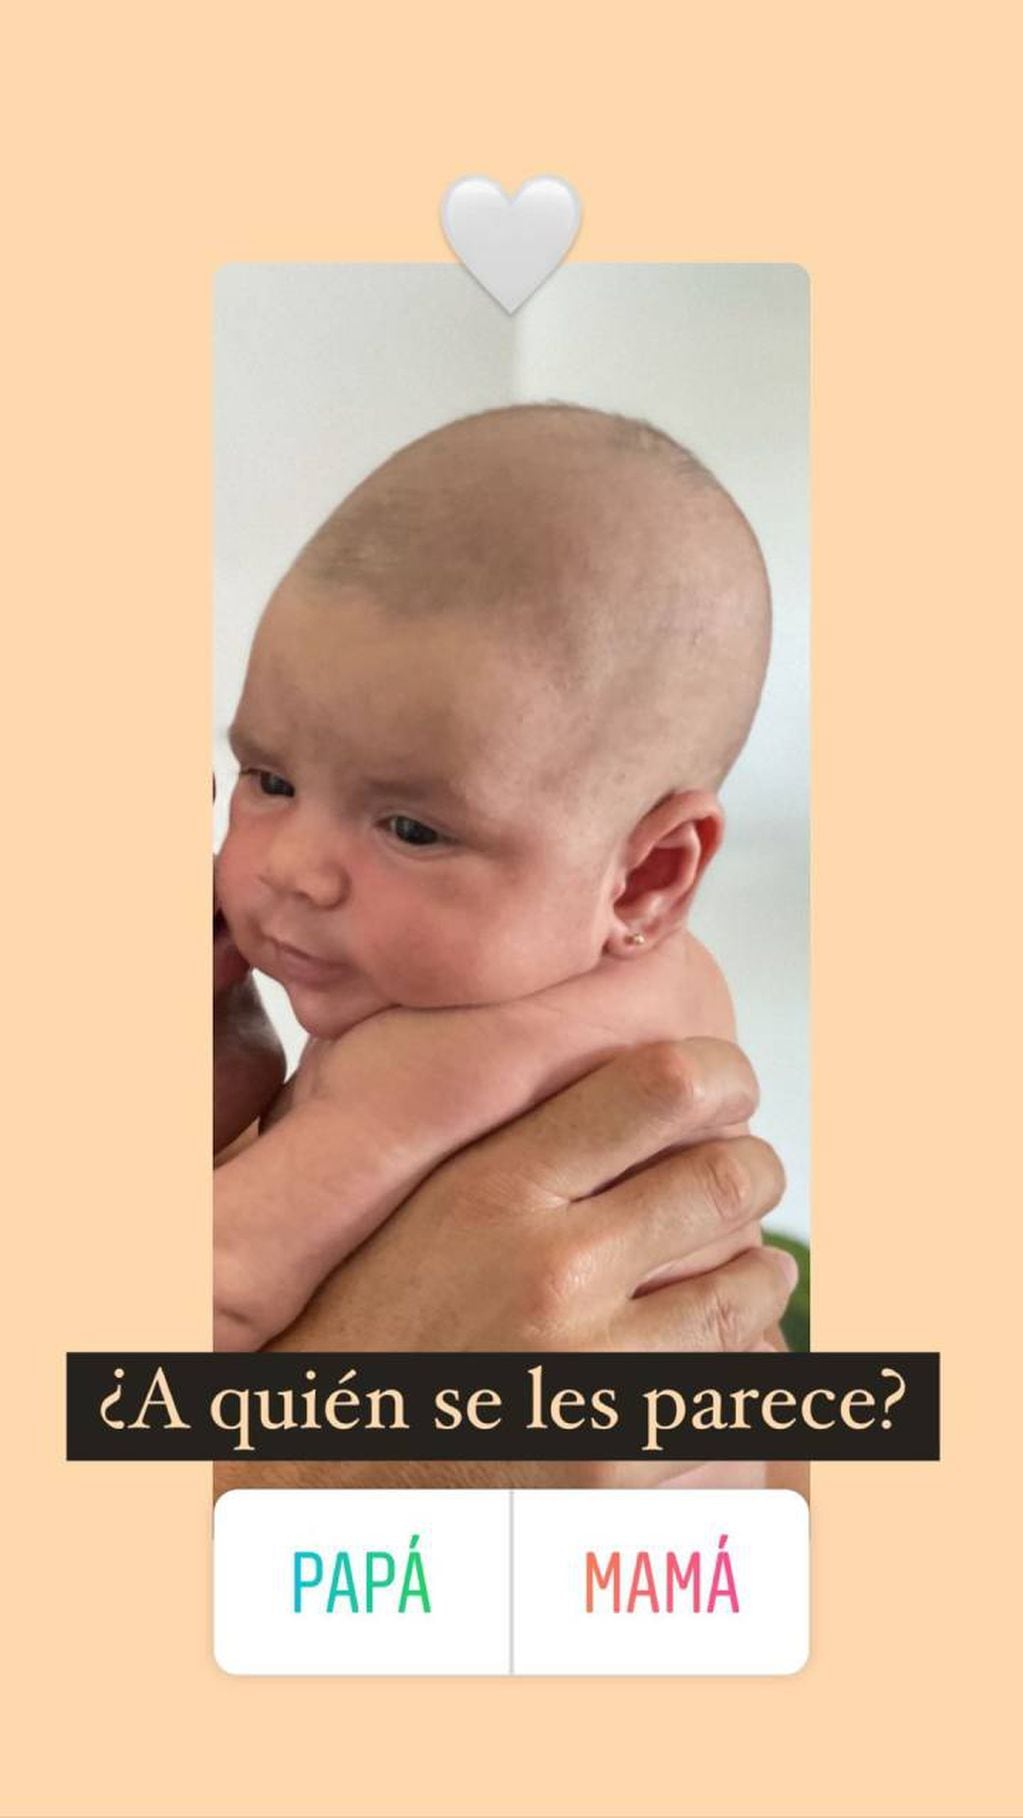 La rosarina lanzó una encuesta en sus historias de Instagram para ver a quién se parece más la beba.